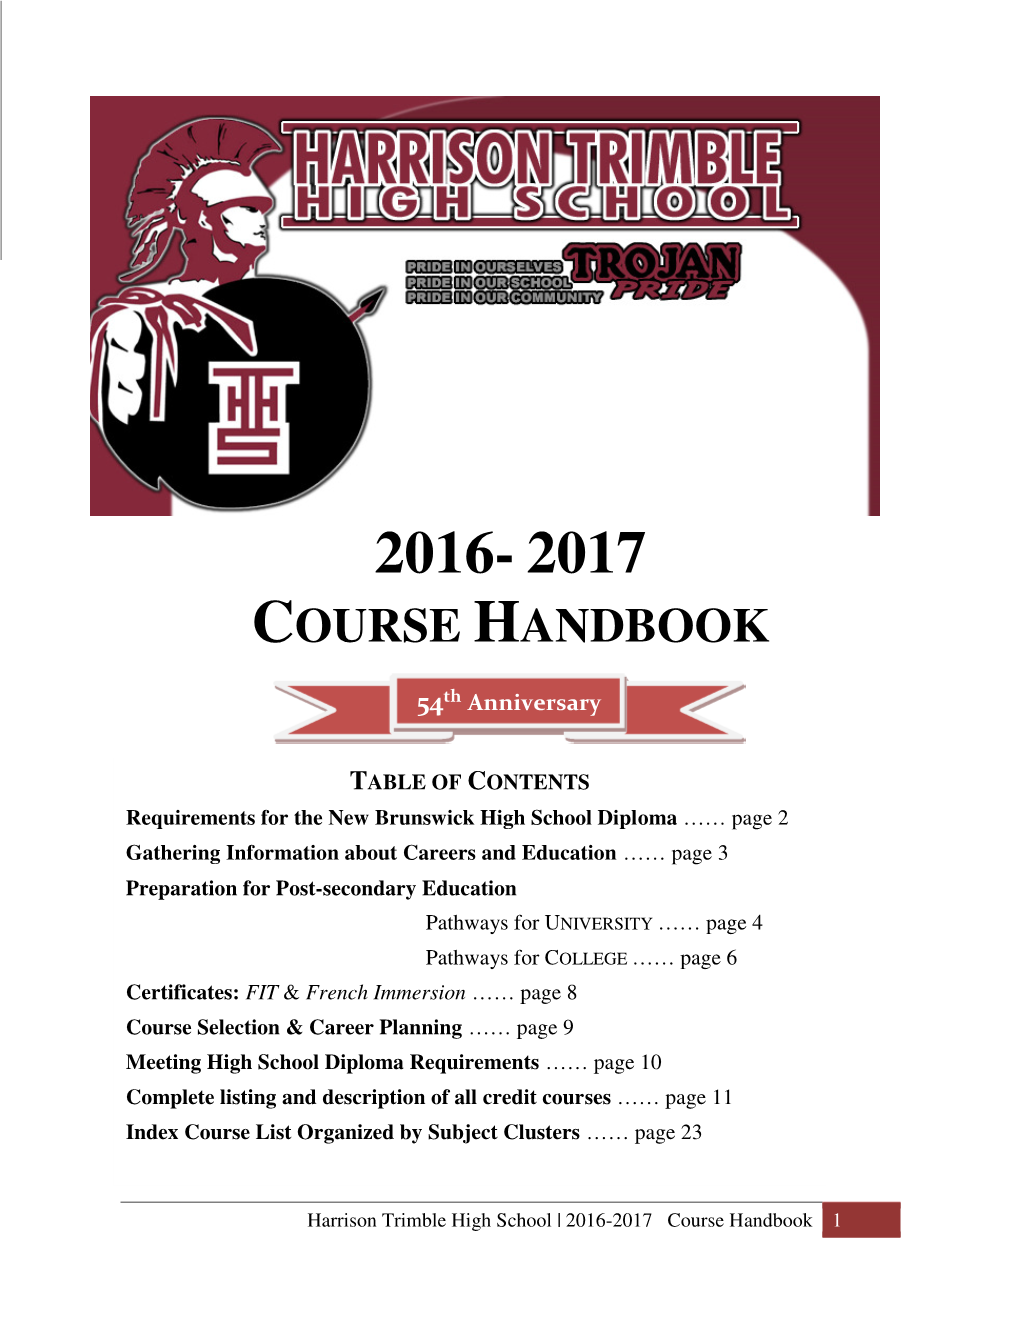 HTHS Course Handbook 2016-17.Pdf